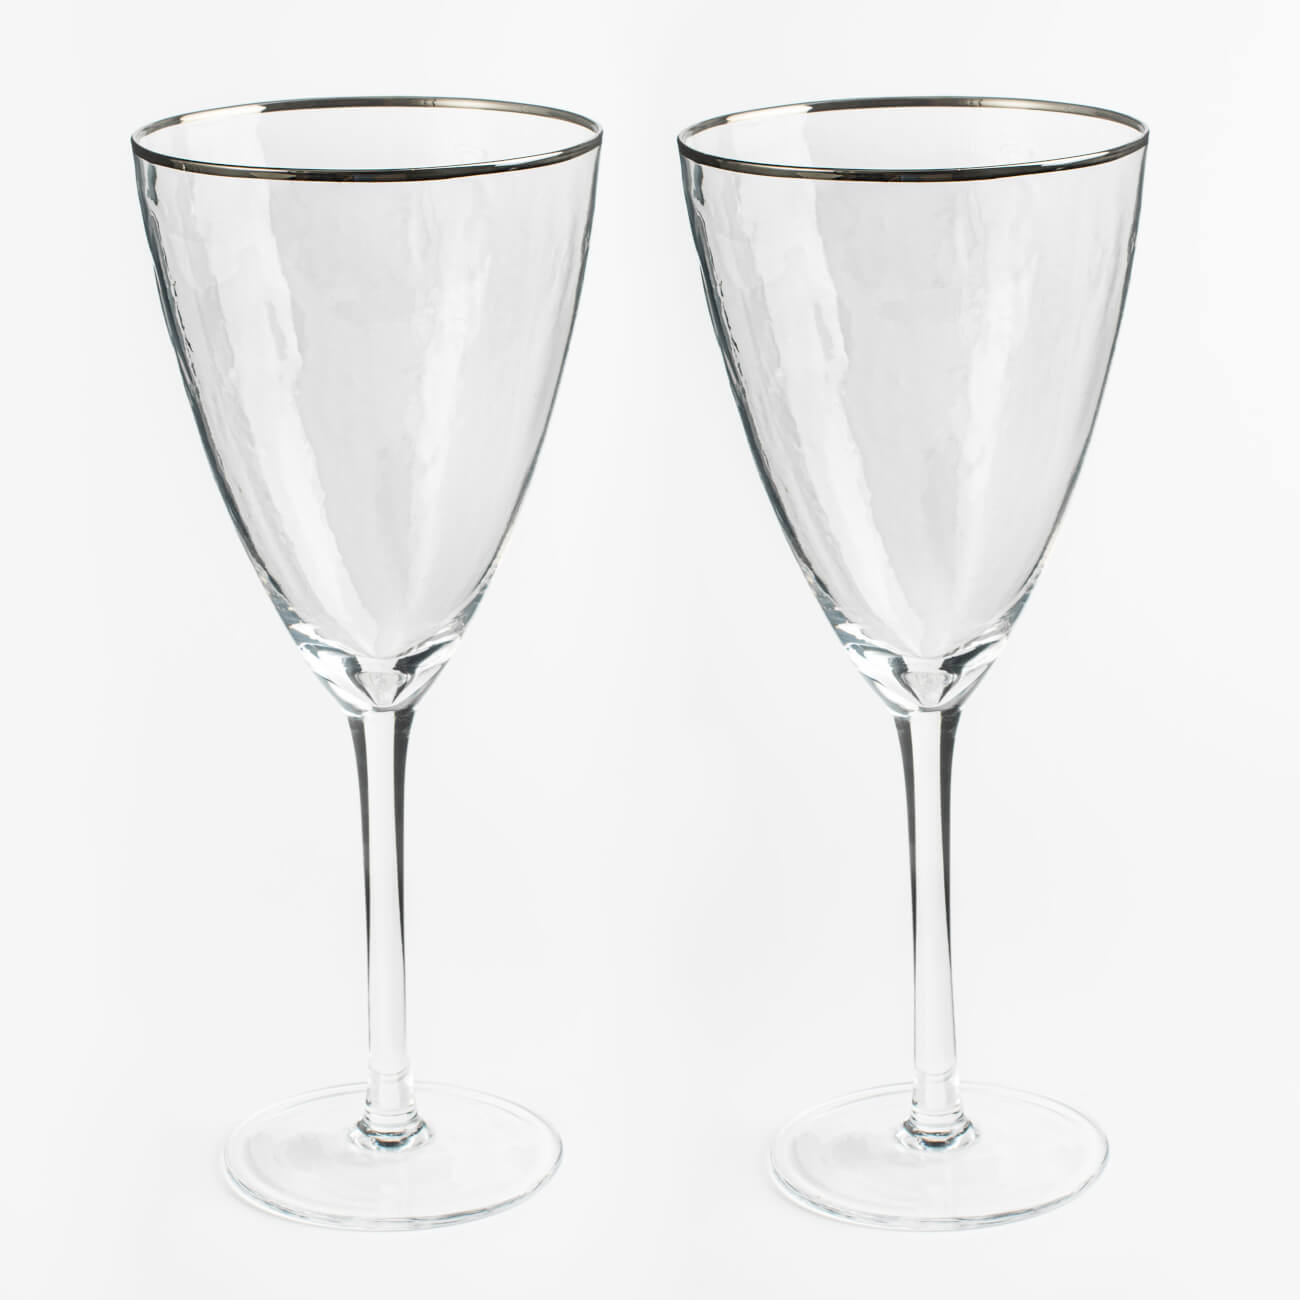 Бокал для вина, 400 мл, 2 шт, стекло, с серебристым кантом, Ripply silver бокал для шампанского 275 мл 2 шт стекло перламутр ripply polar